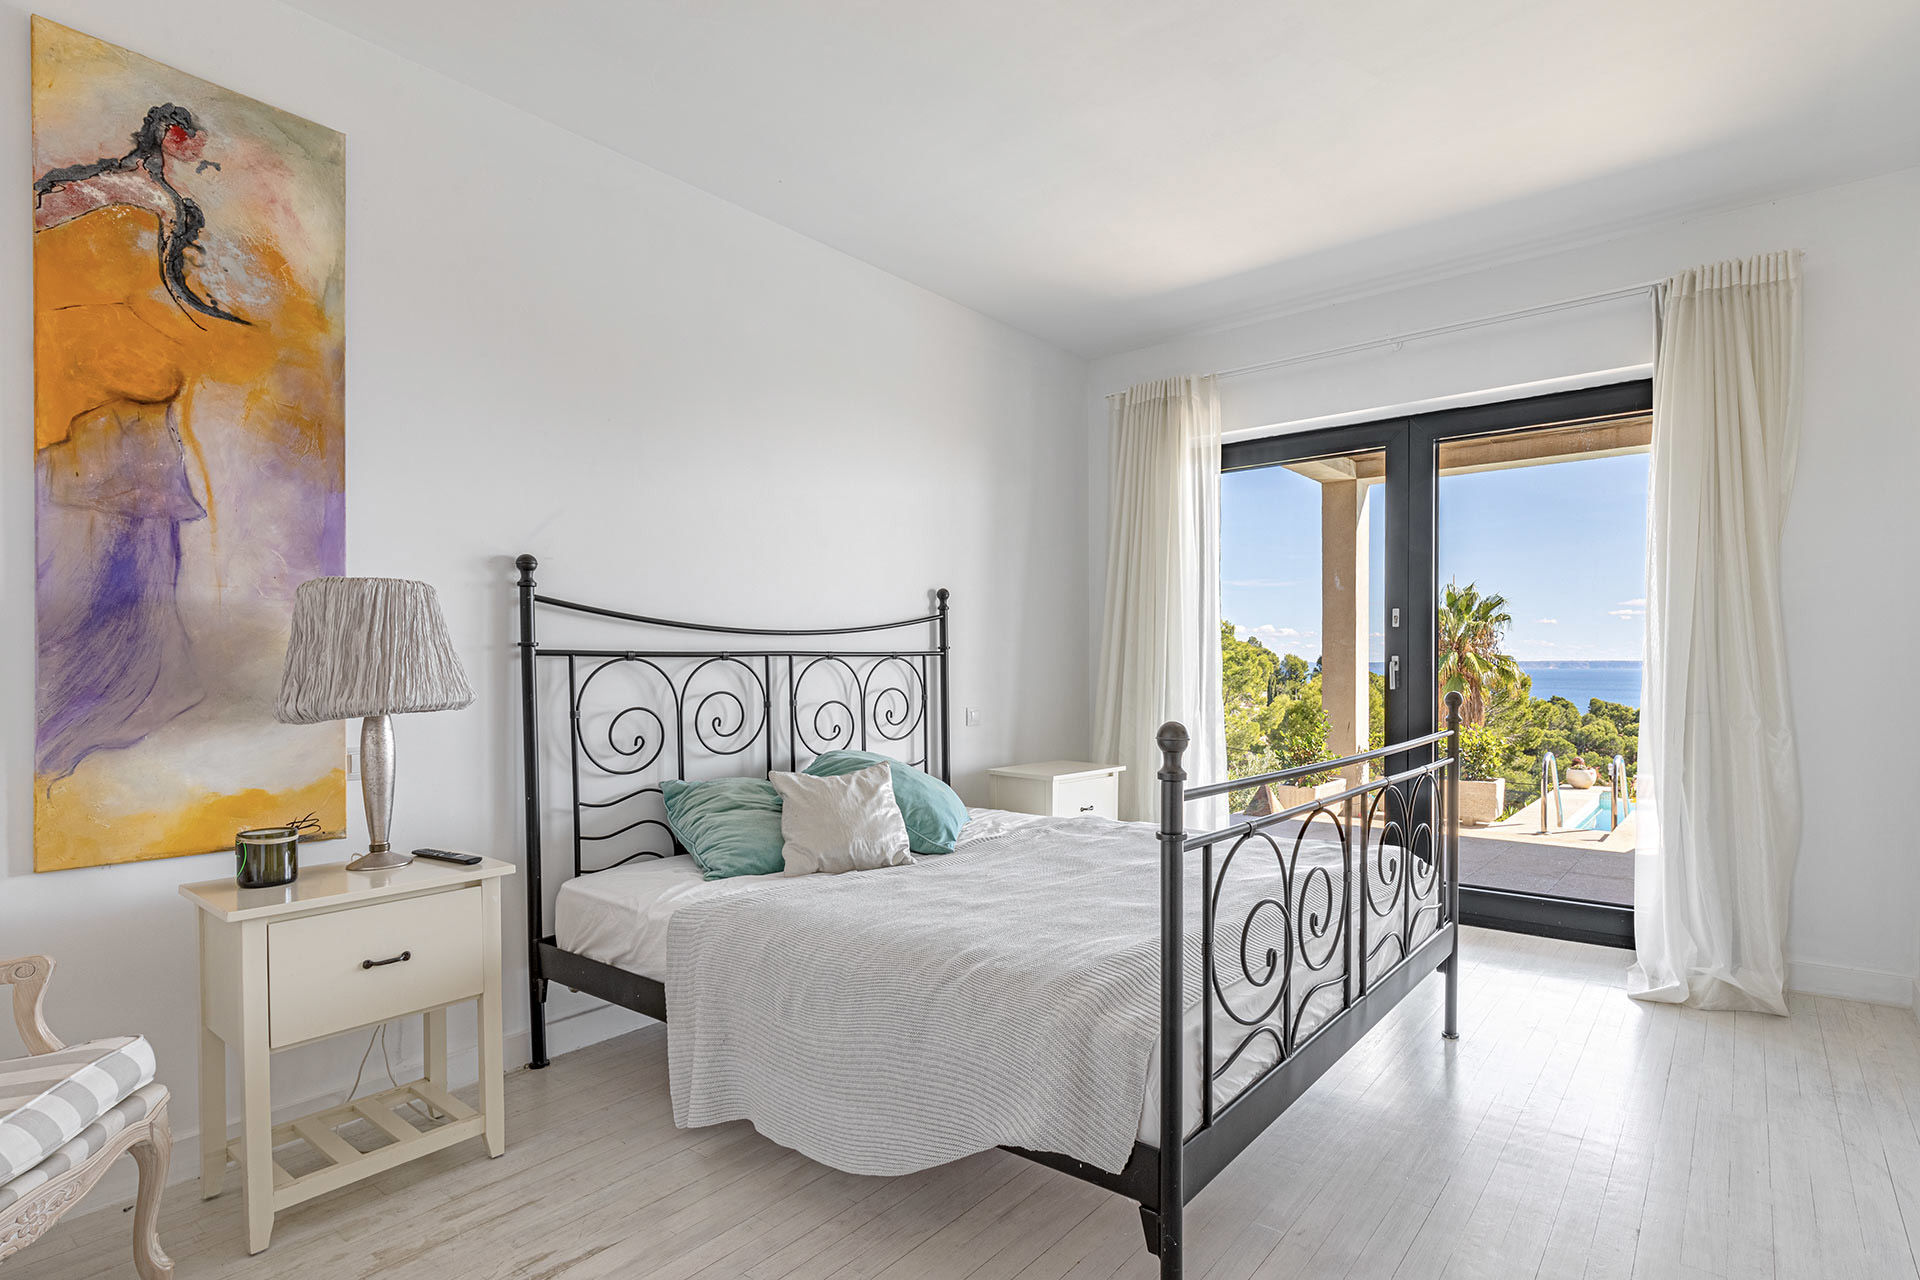 Moderne Villa mit Meerblick in Costa d’en Blanes - Schlafzimmer 2 in der zweiten Etage